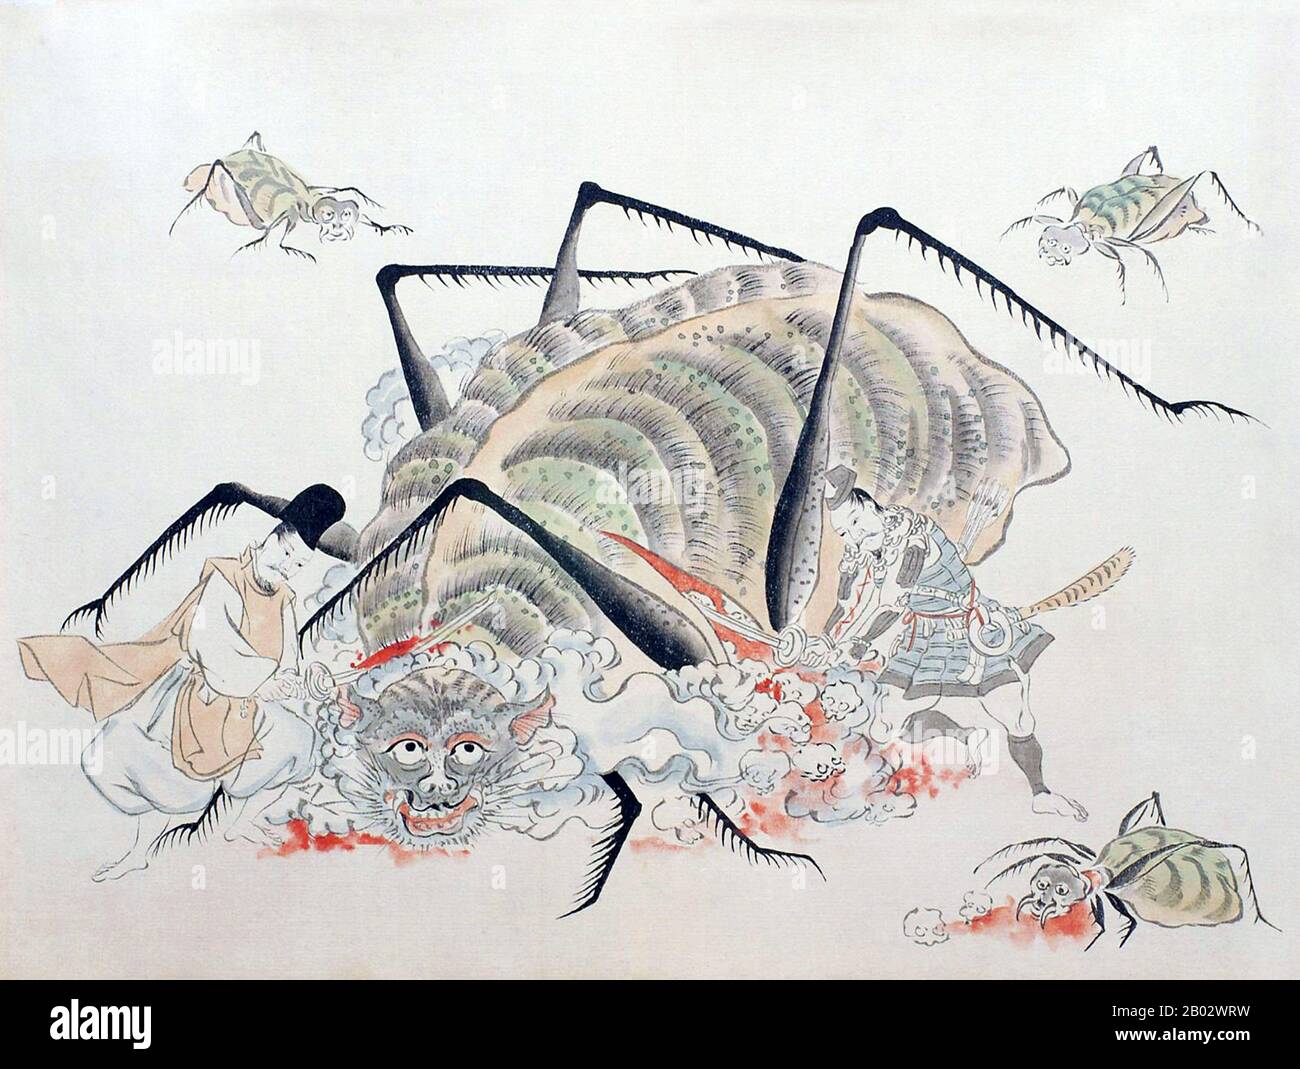 Tsuchigumo sont des créatures monstrueuses avec le corps d'un tigre, les membres d'une araignée et le visage d'un démon. Ils capturent, lient et mangent des voyageurs méfiants. Lorsque Minamoto no Yorimitsu a tué un Tsuchigumo, 1 990 crânes humains sont tombés de son ventre. Le Tsuchigumo no Zshi Emaki (le défilement narratif de l'histoire de l'araignée terrestre est un défilement d'image représentant une histoire d'une bataille entre Tsuchigumo et Minamoto no Yorimitsu, un général de la période du Moyen-Heian. L'histoire est bien connue comme un épisode à Taiheiki (un conte de guerriers) et la chanson Noh 'Tsuchigumo'. Banque D'Images